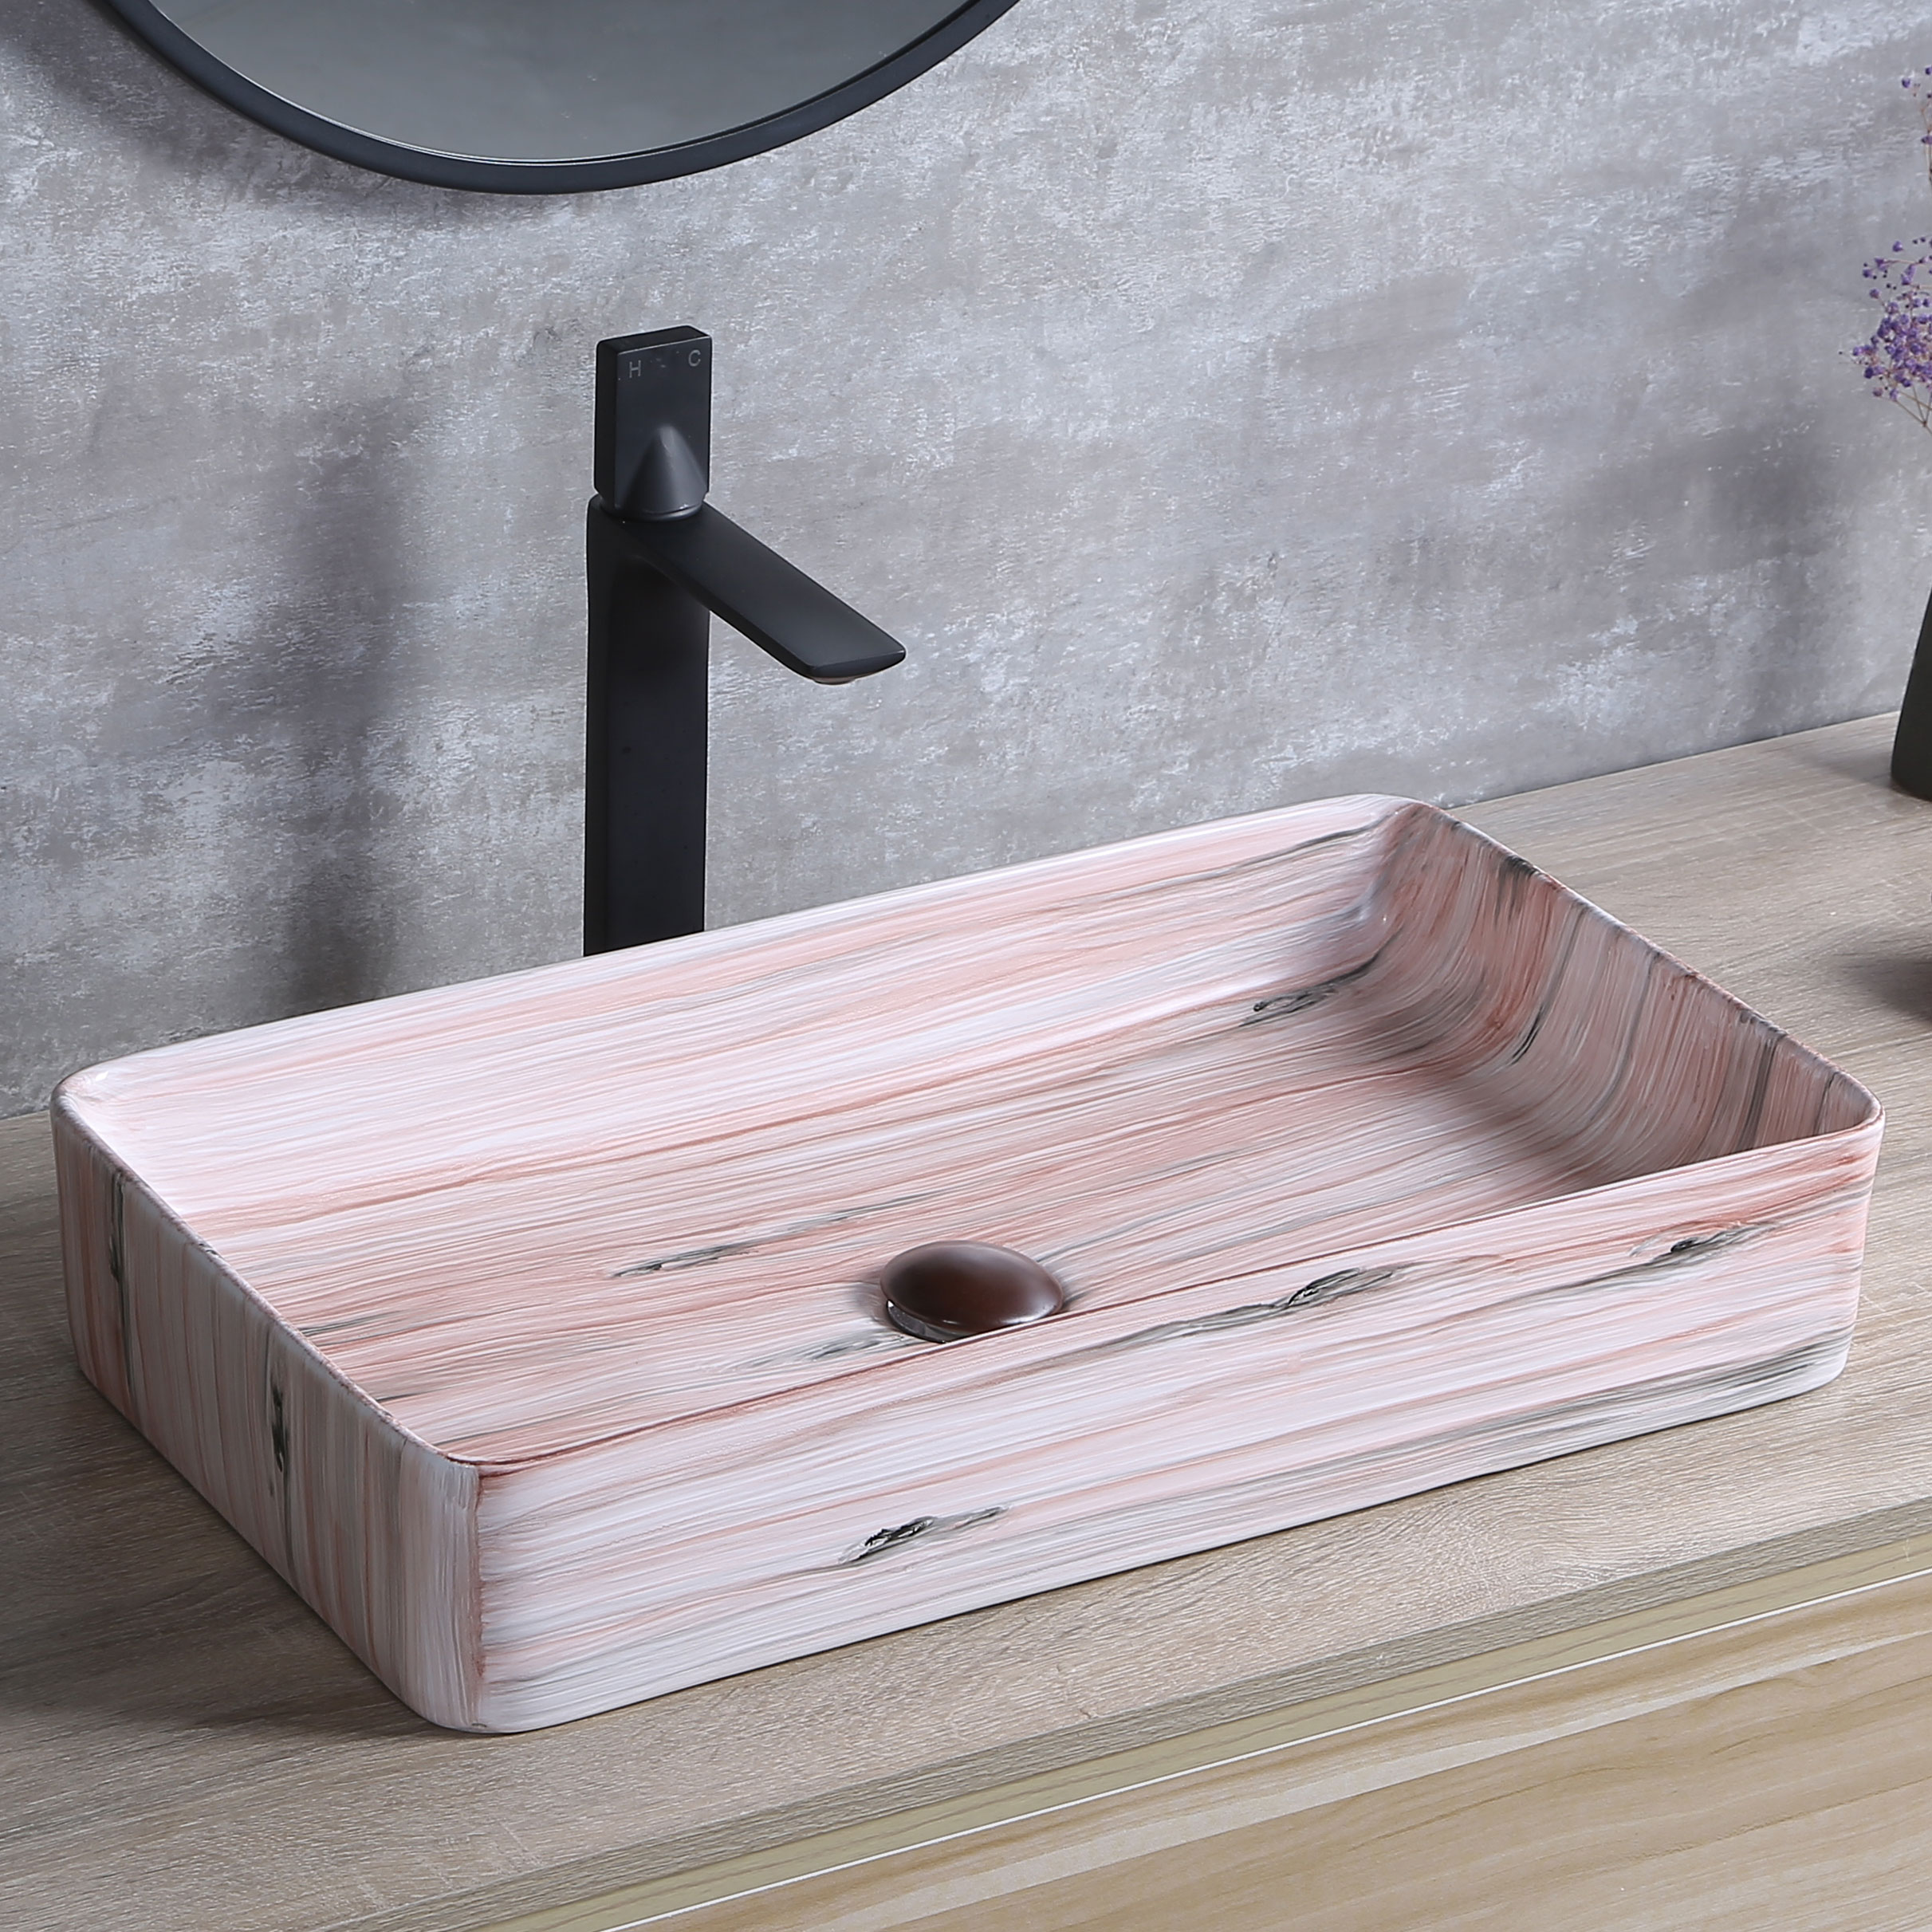 Unique Wood Ceramic Countertop Rasin customized LAETUS Polymarbleti Sink